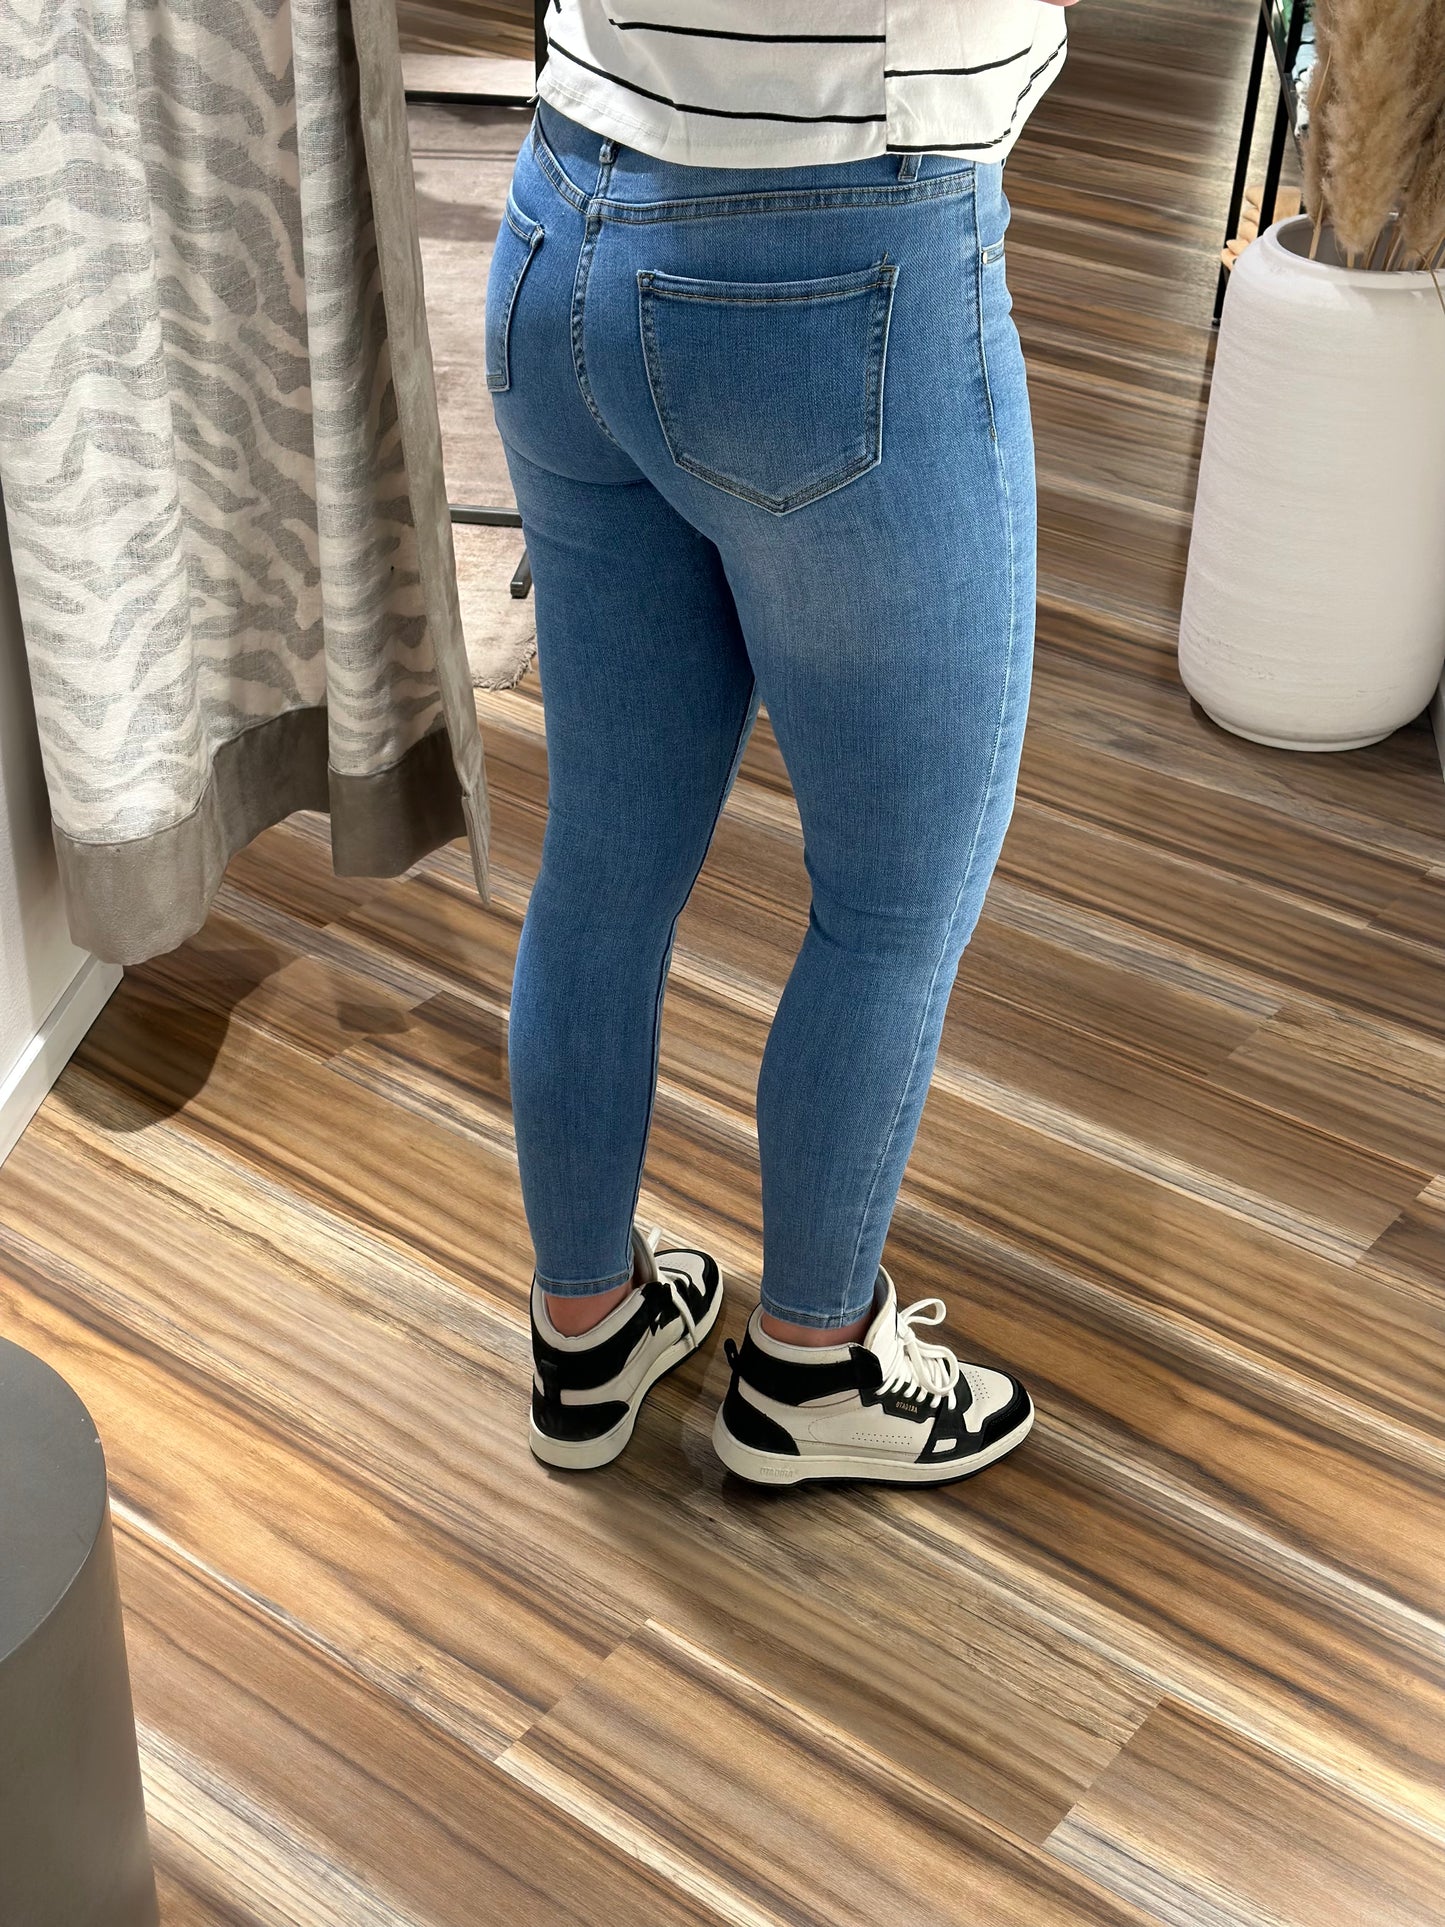 Jencic favvo jeans